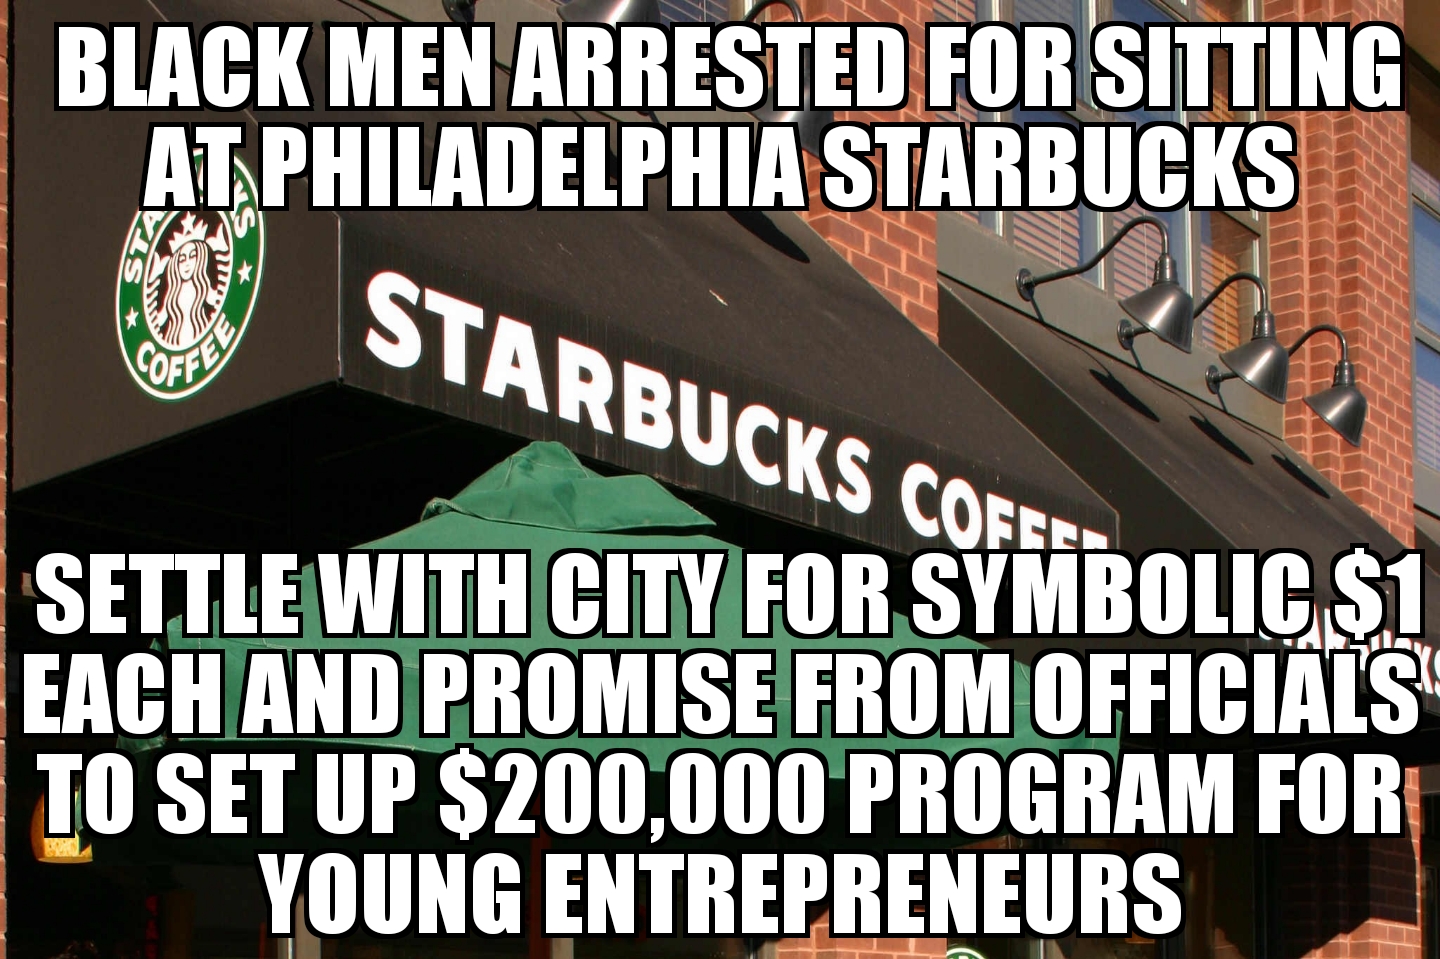 Black men arrested at Philadelphia Starbucks settle with city